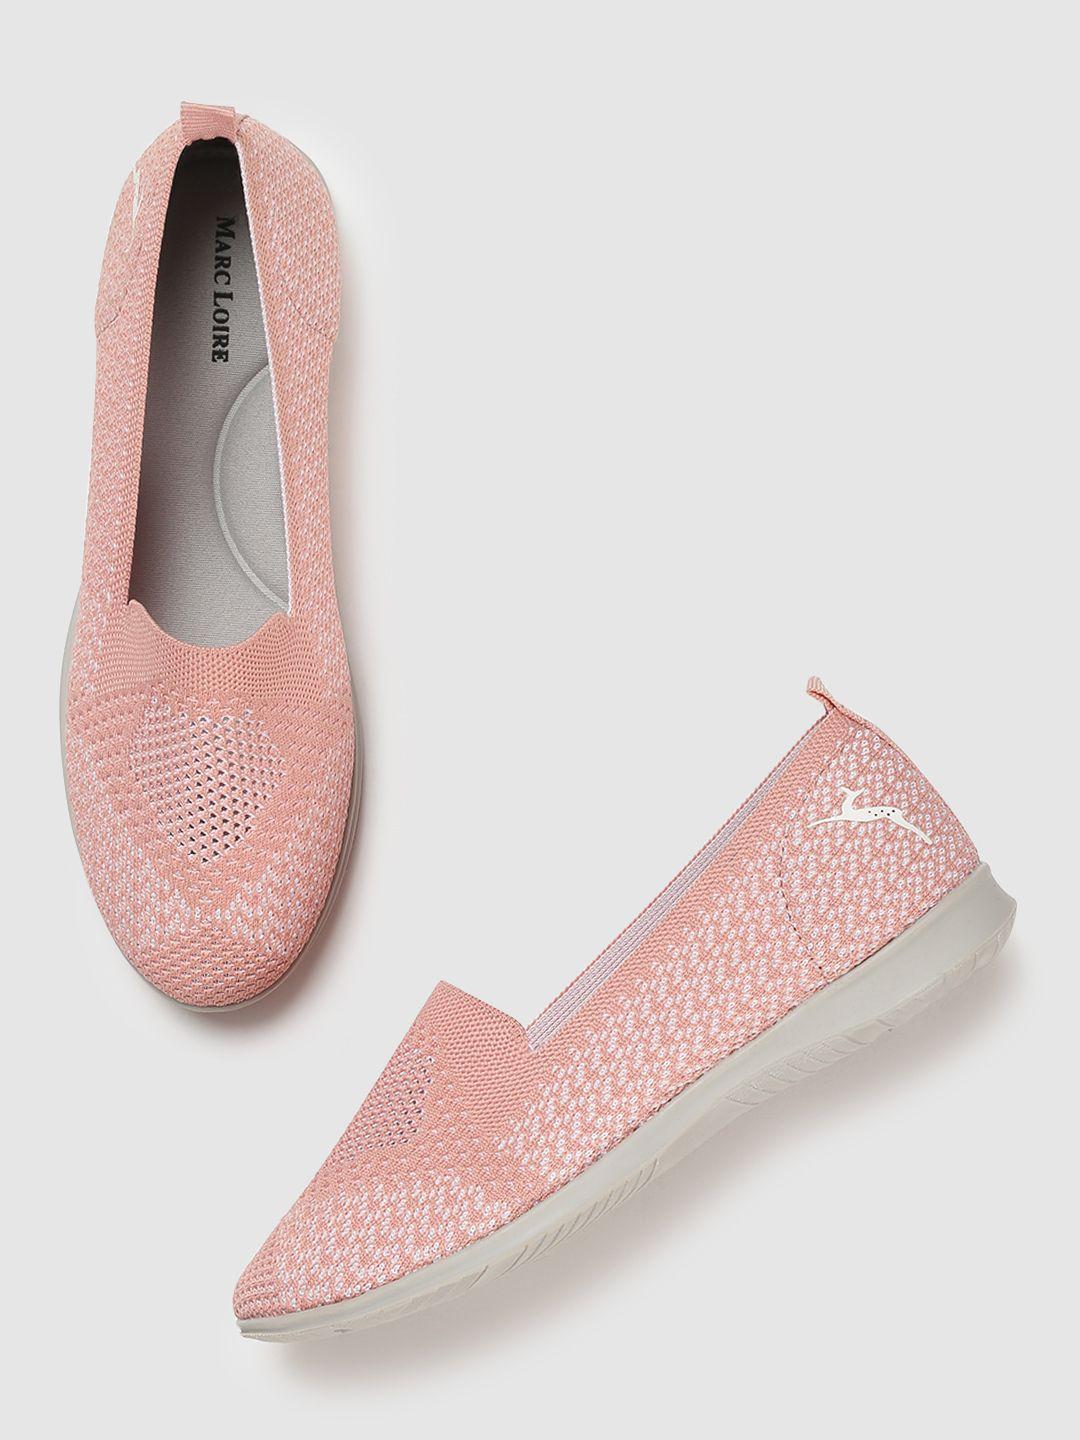 marc loire women peach-coloured printed ballerinas flats shoes